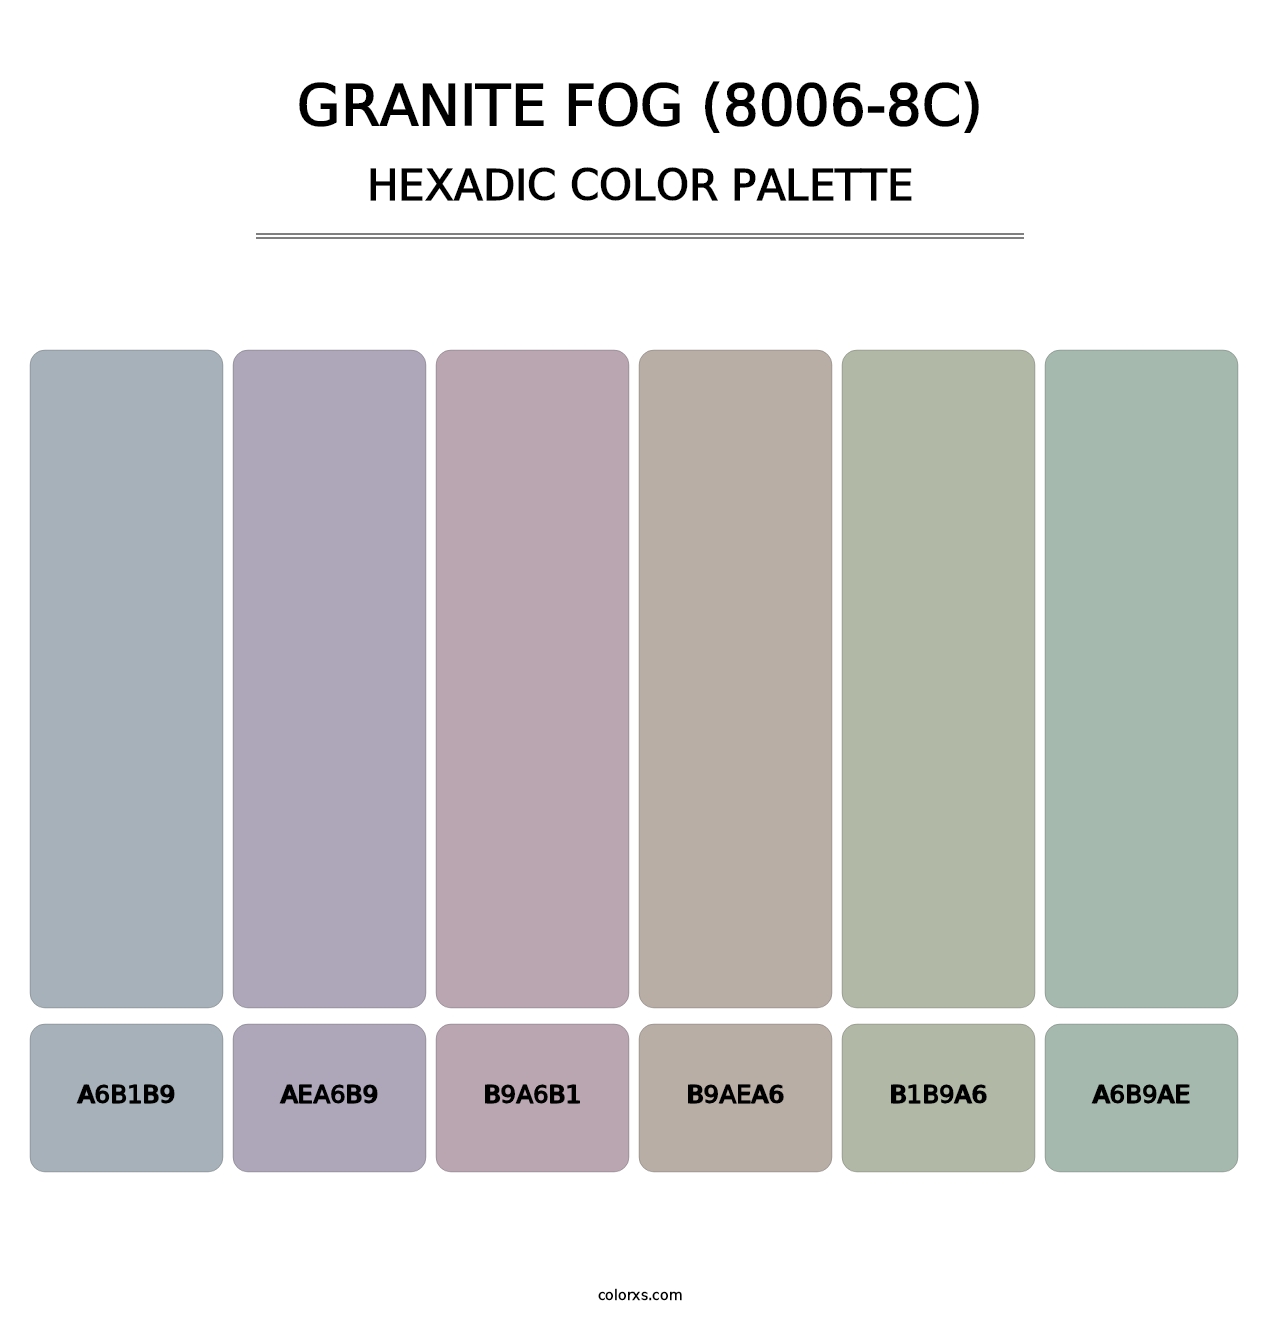 Granite Fog (8006-8C) - Hexadic Color Palette